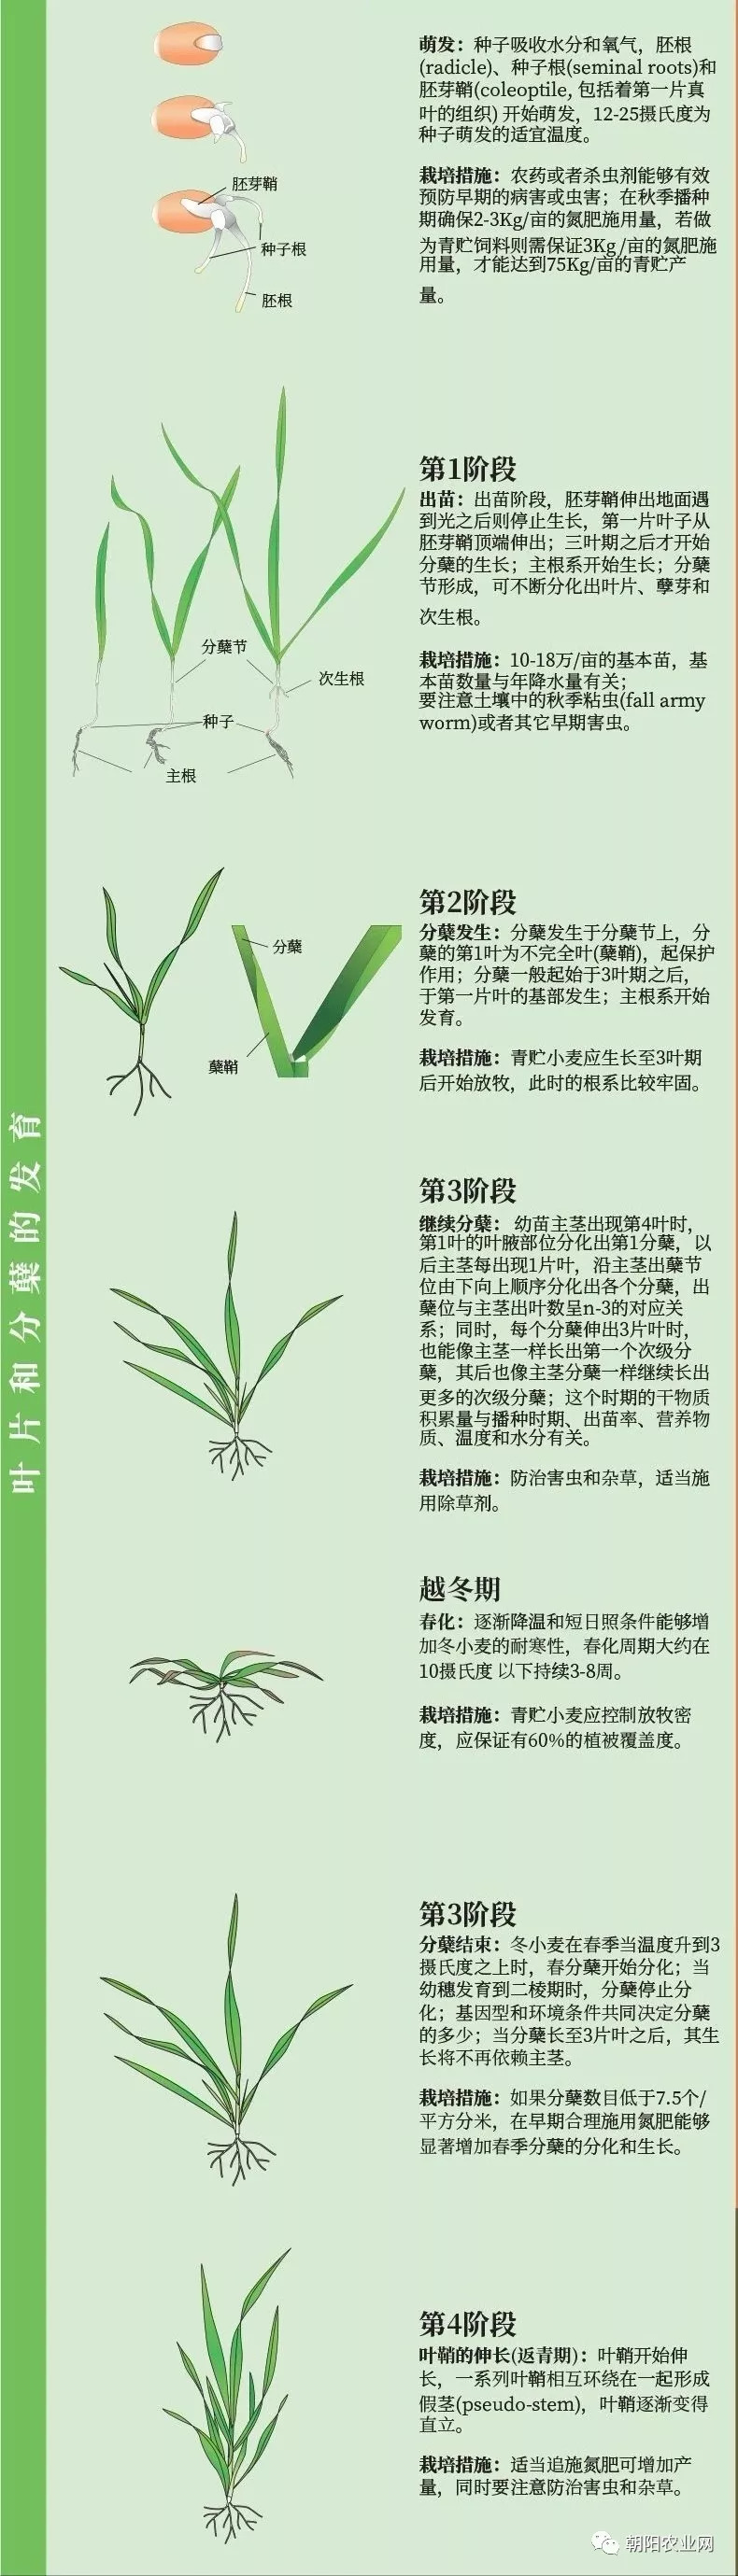 又到小麦种植季一张图带你了解小麦全生育过程